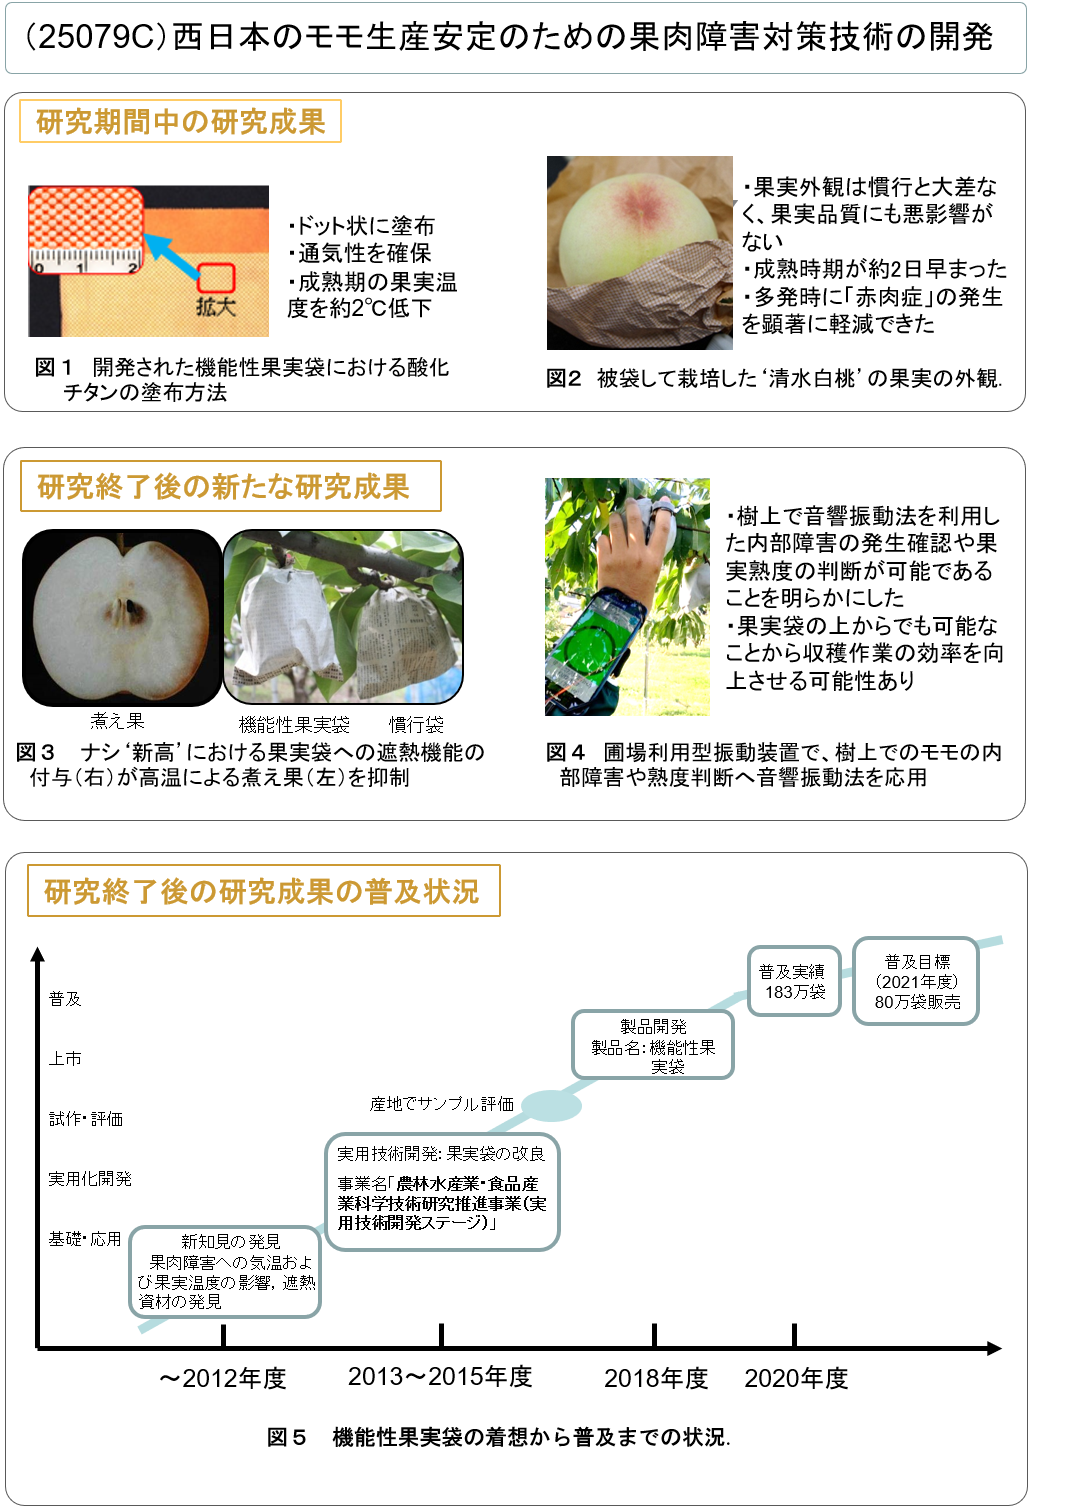 (25079C) 西日本のモモ生産安定のための果肉障害対策技術の開発